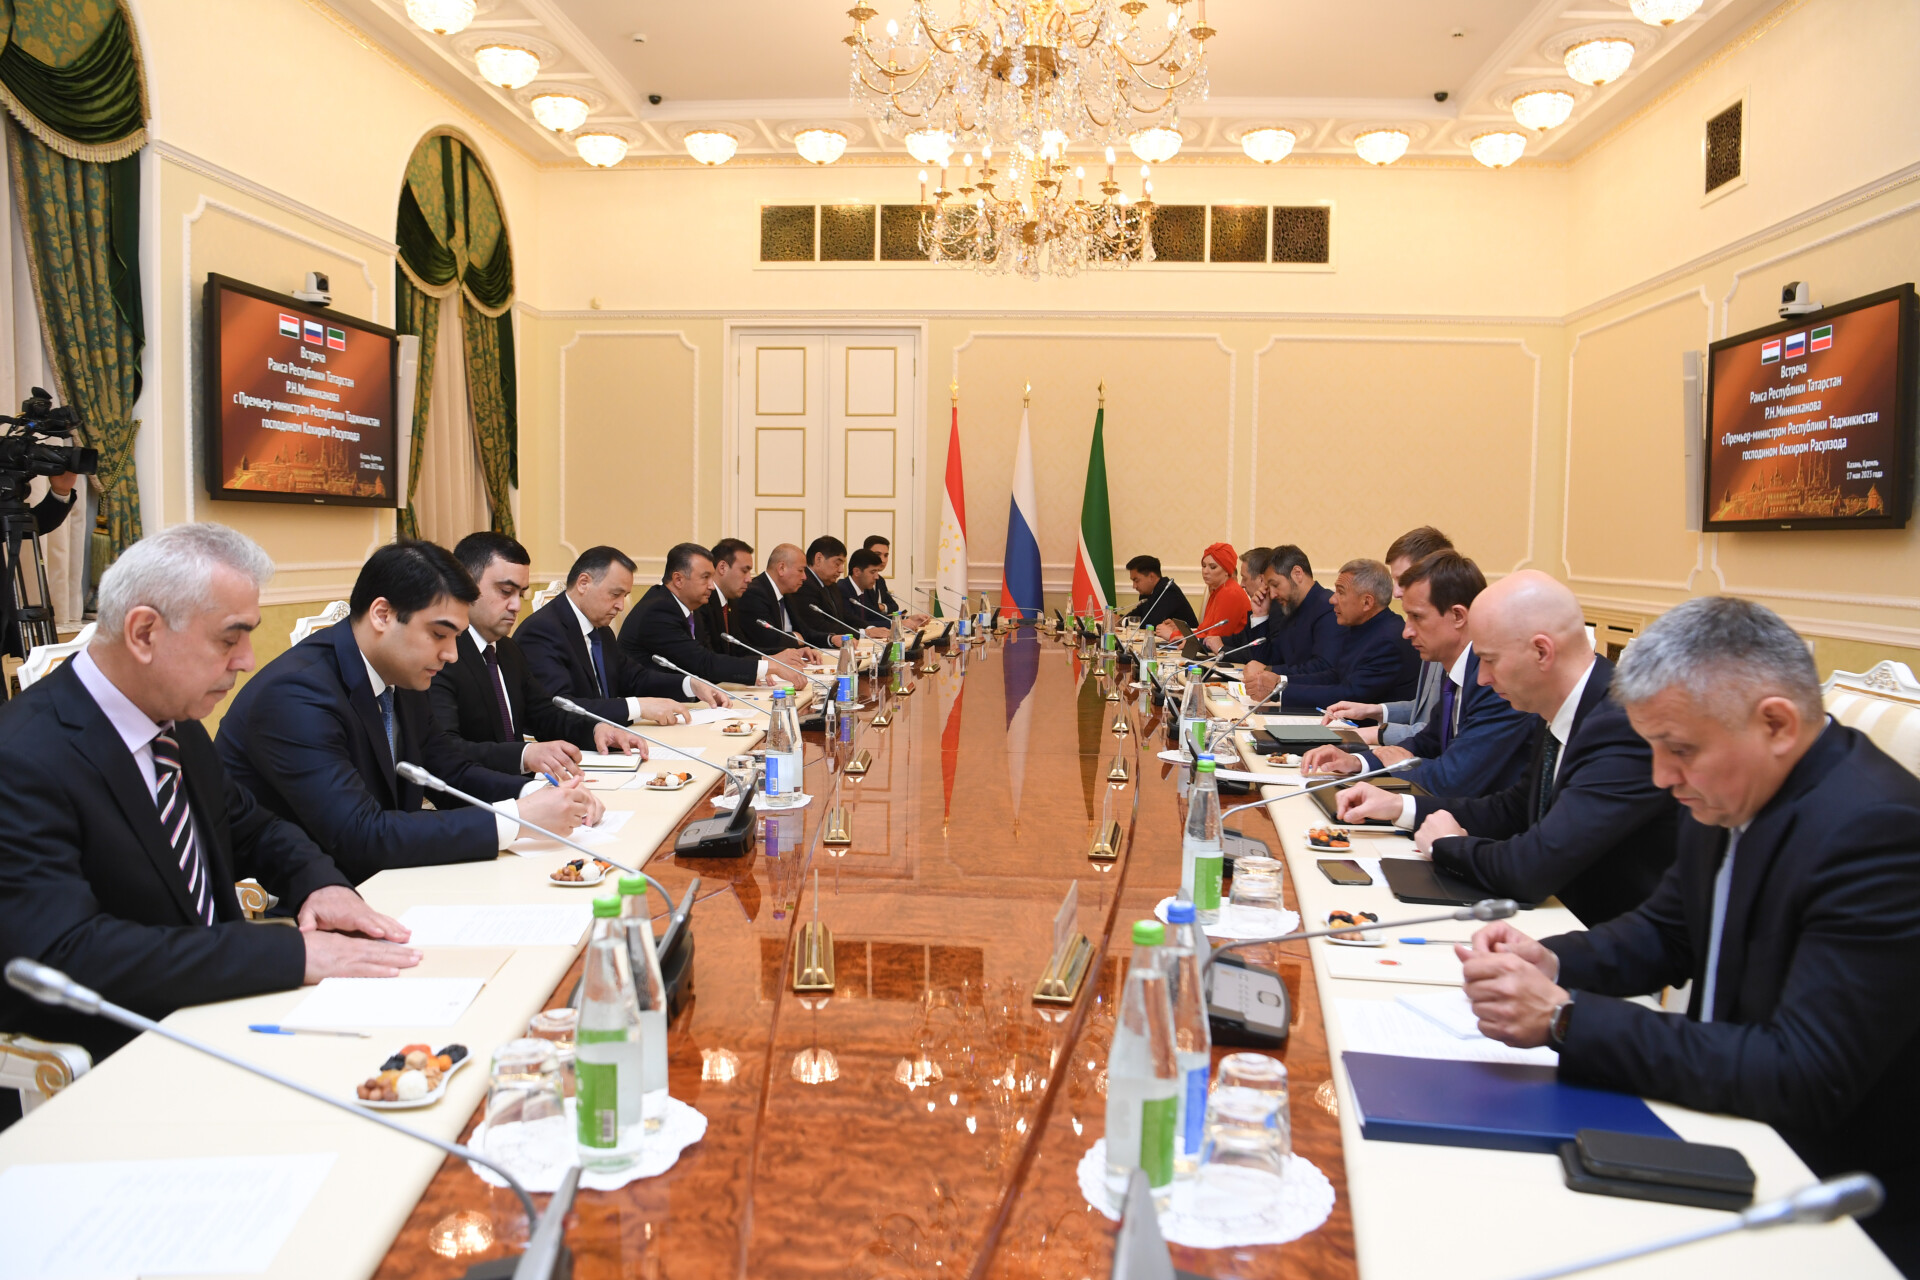 Минниханов: Заинтересованы в расширении присутствия своих компаний на рынке Таджикистана